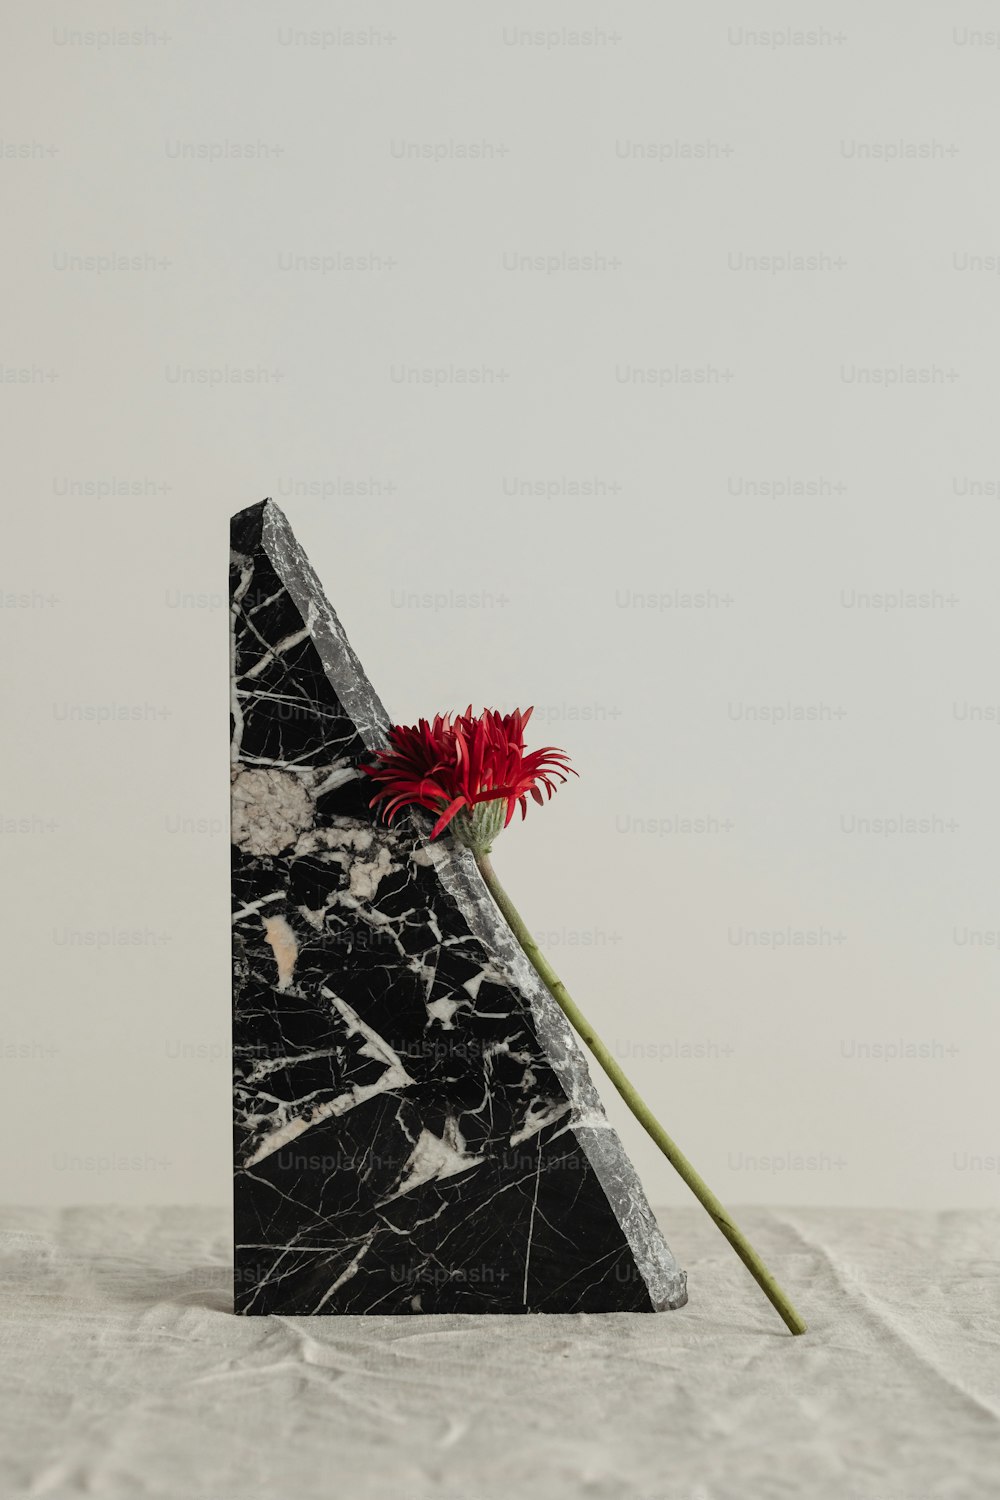 uma obra de arte em preto e branco com uma flor vermelha nela